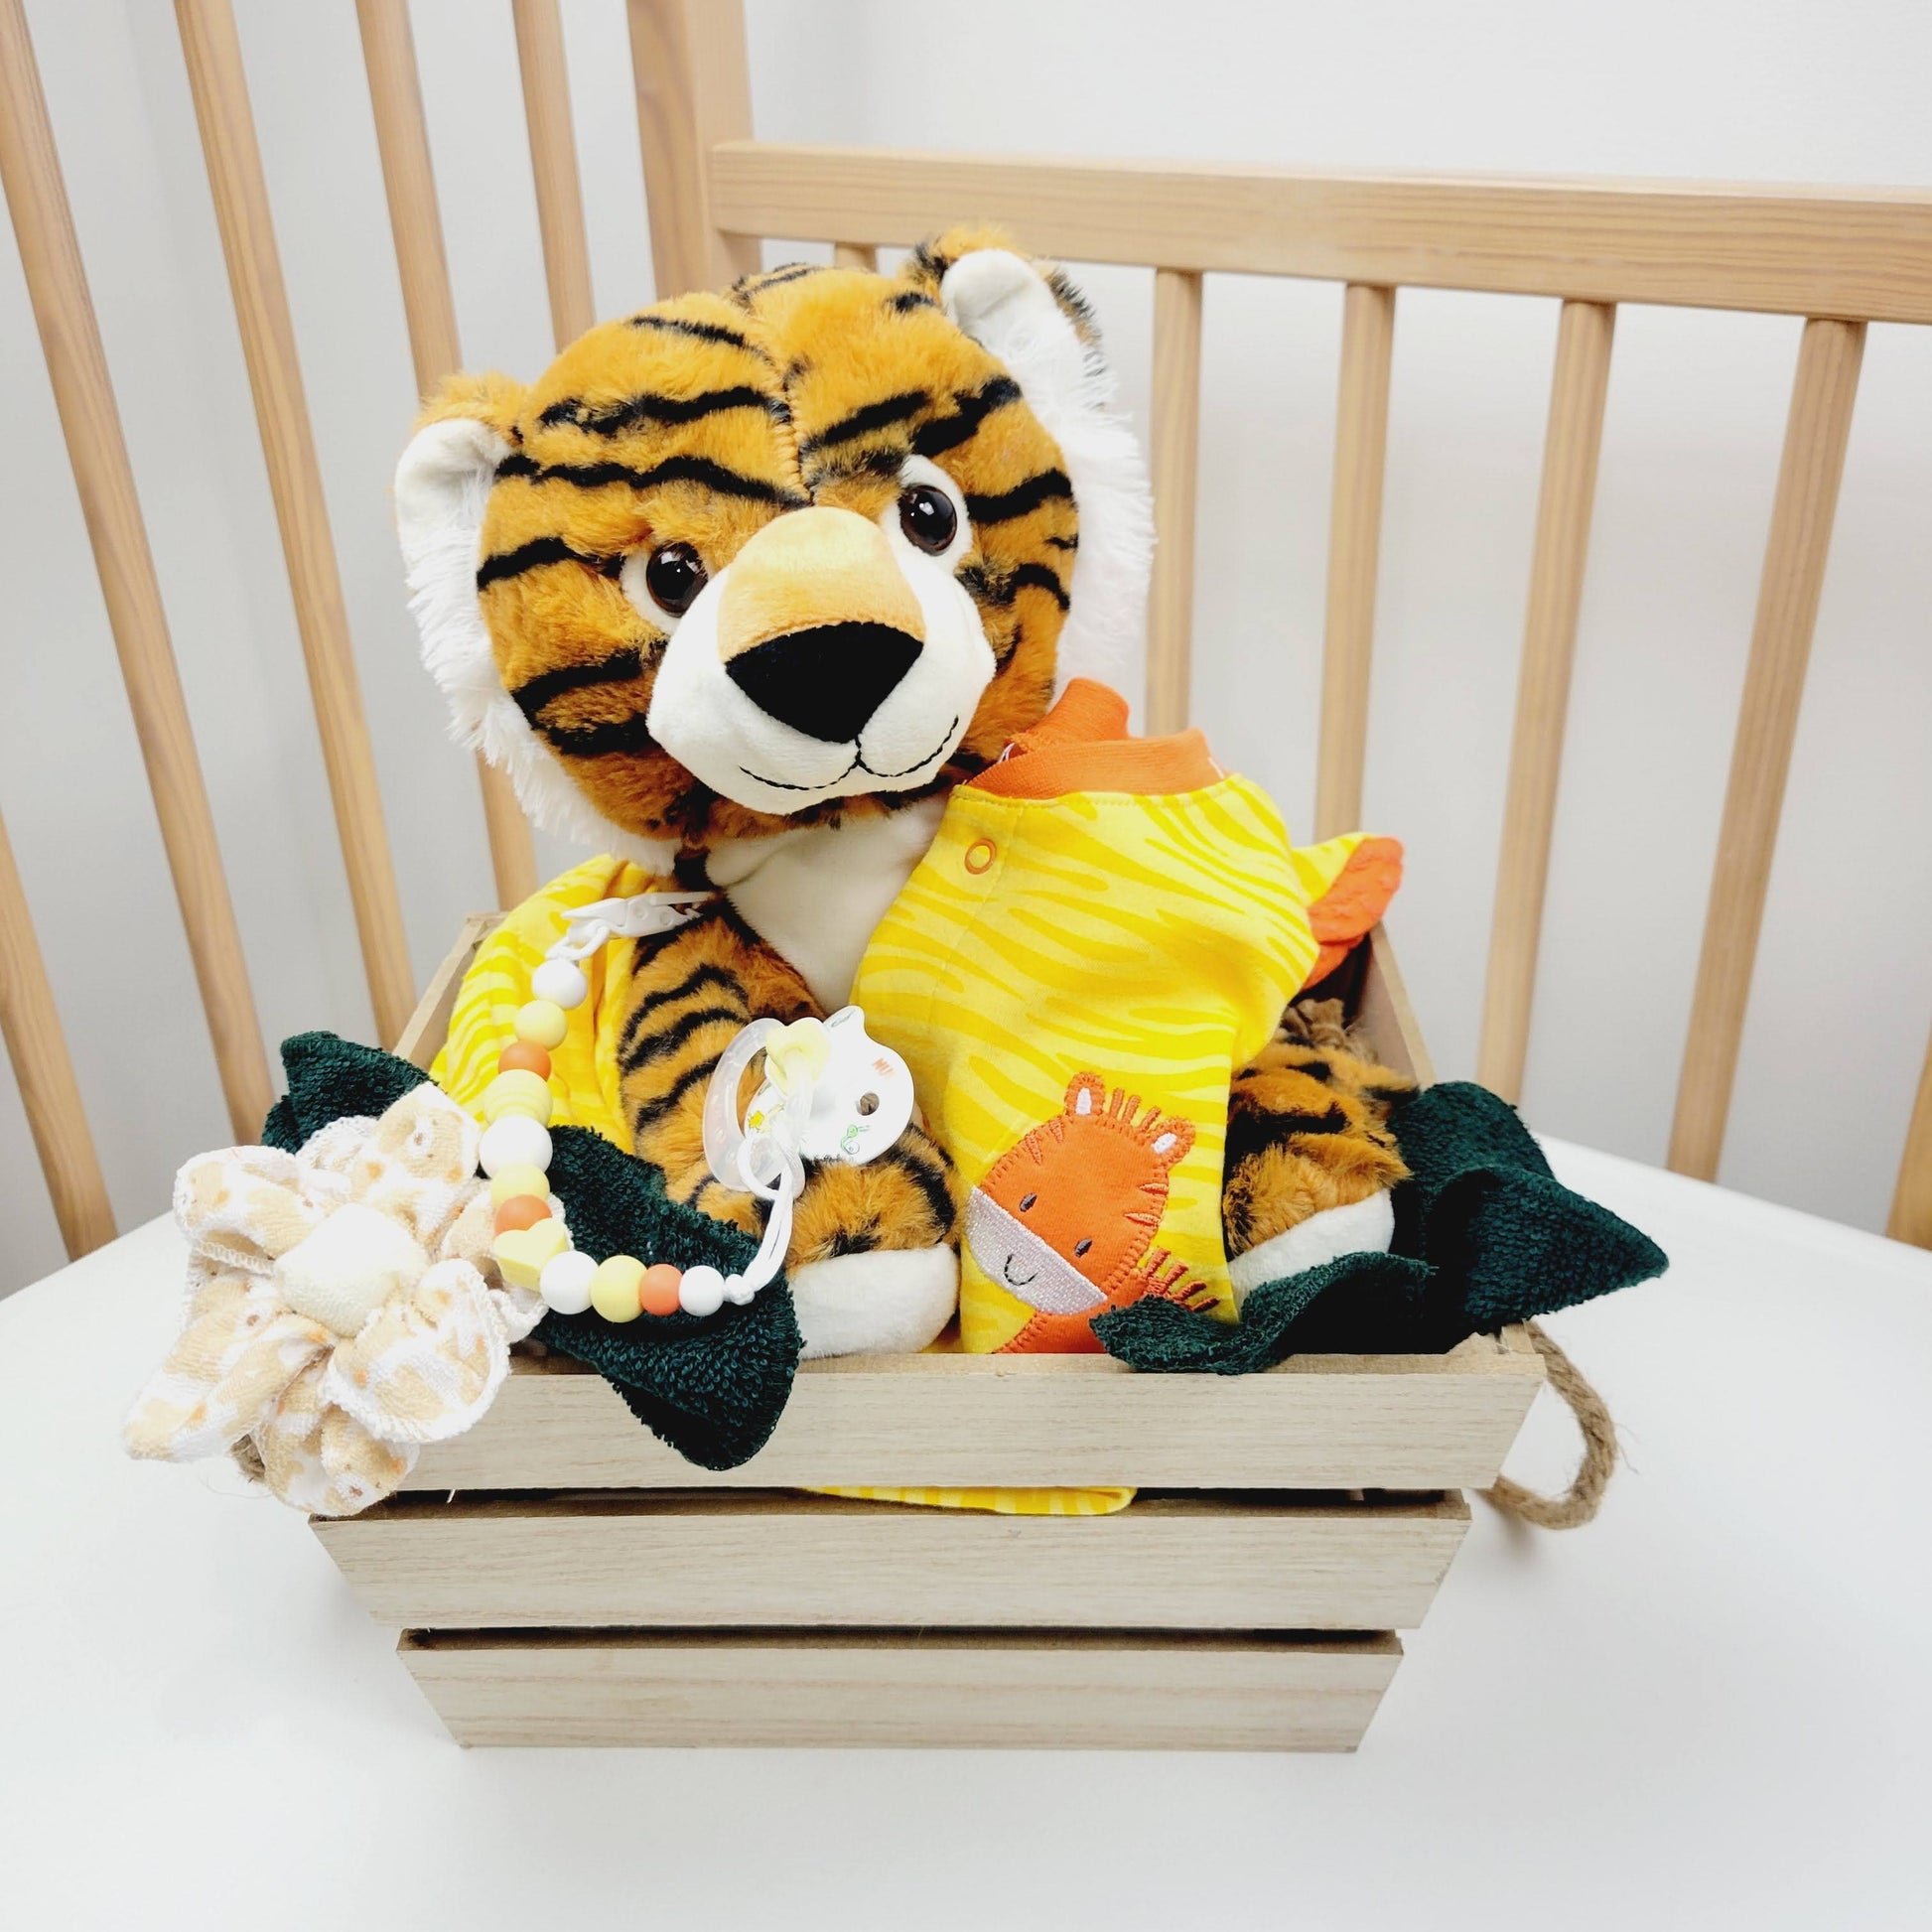 Ensemble cadeau pour babyshower pour bébé garçon. Panier contenant un toutou de tigre, un pyjamas jaune orange avec un tigre, un attache-suce et la suce ainsi que des débarbouillettes. 